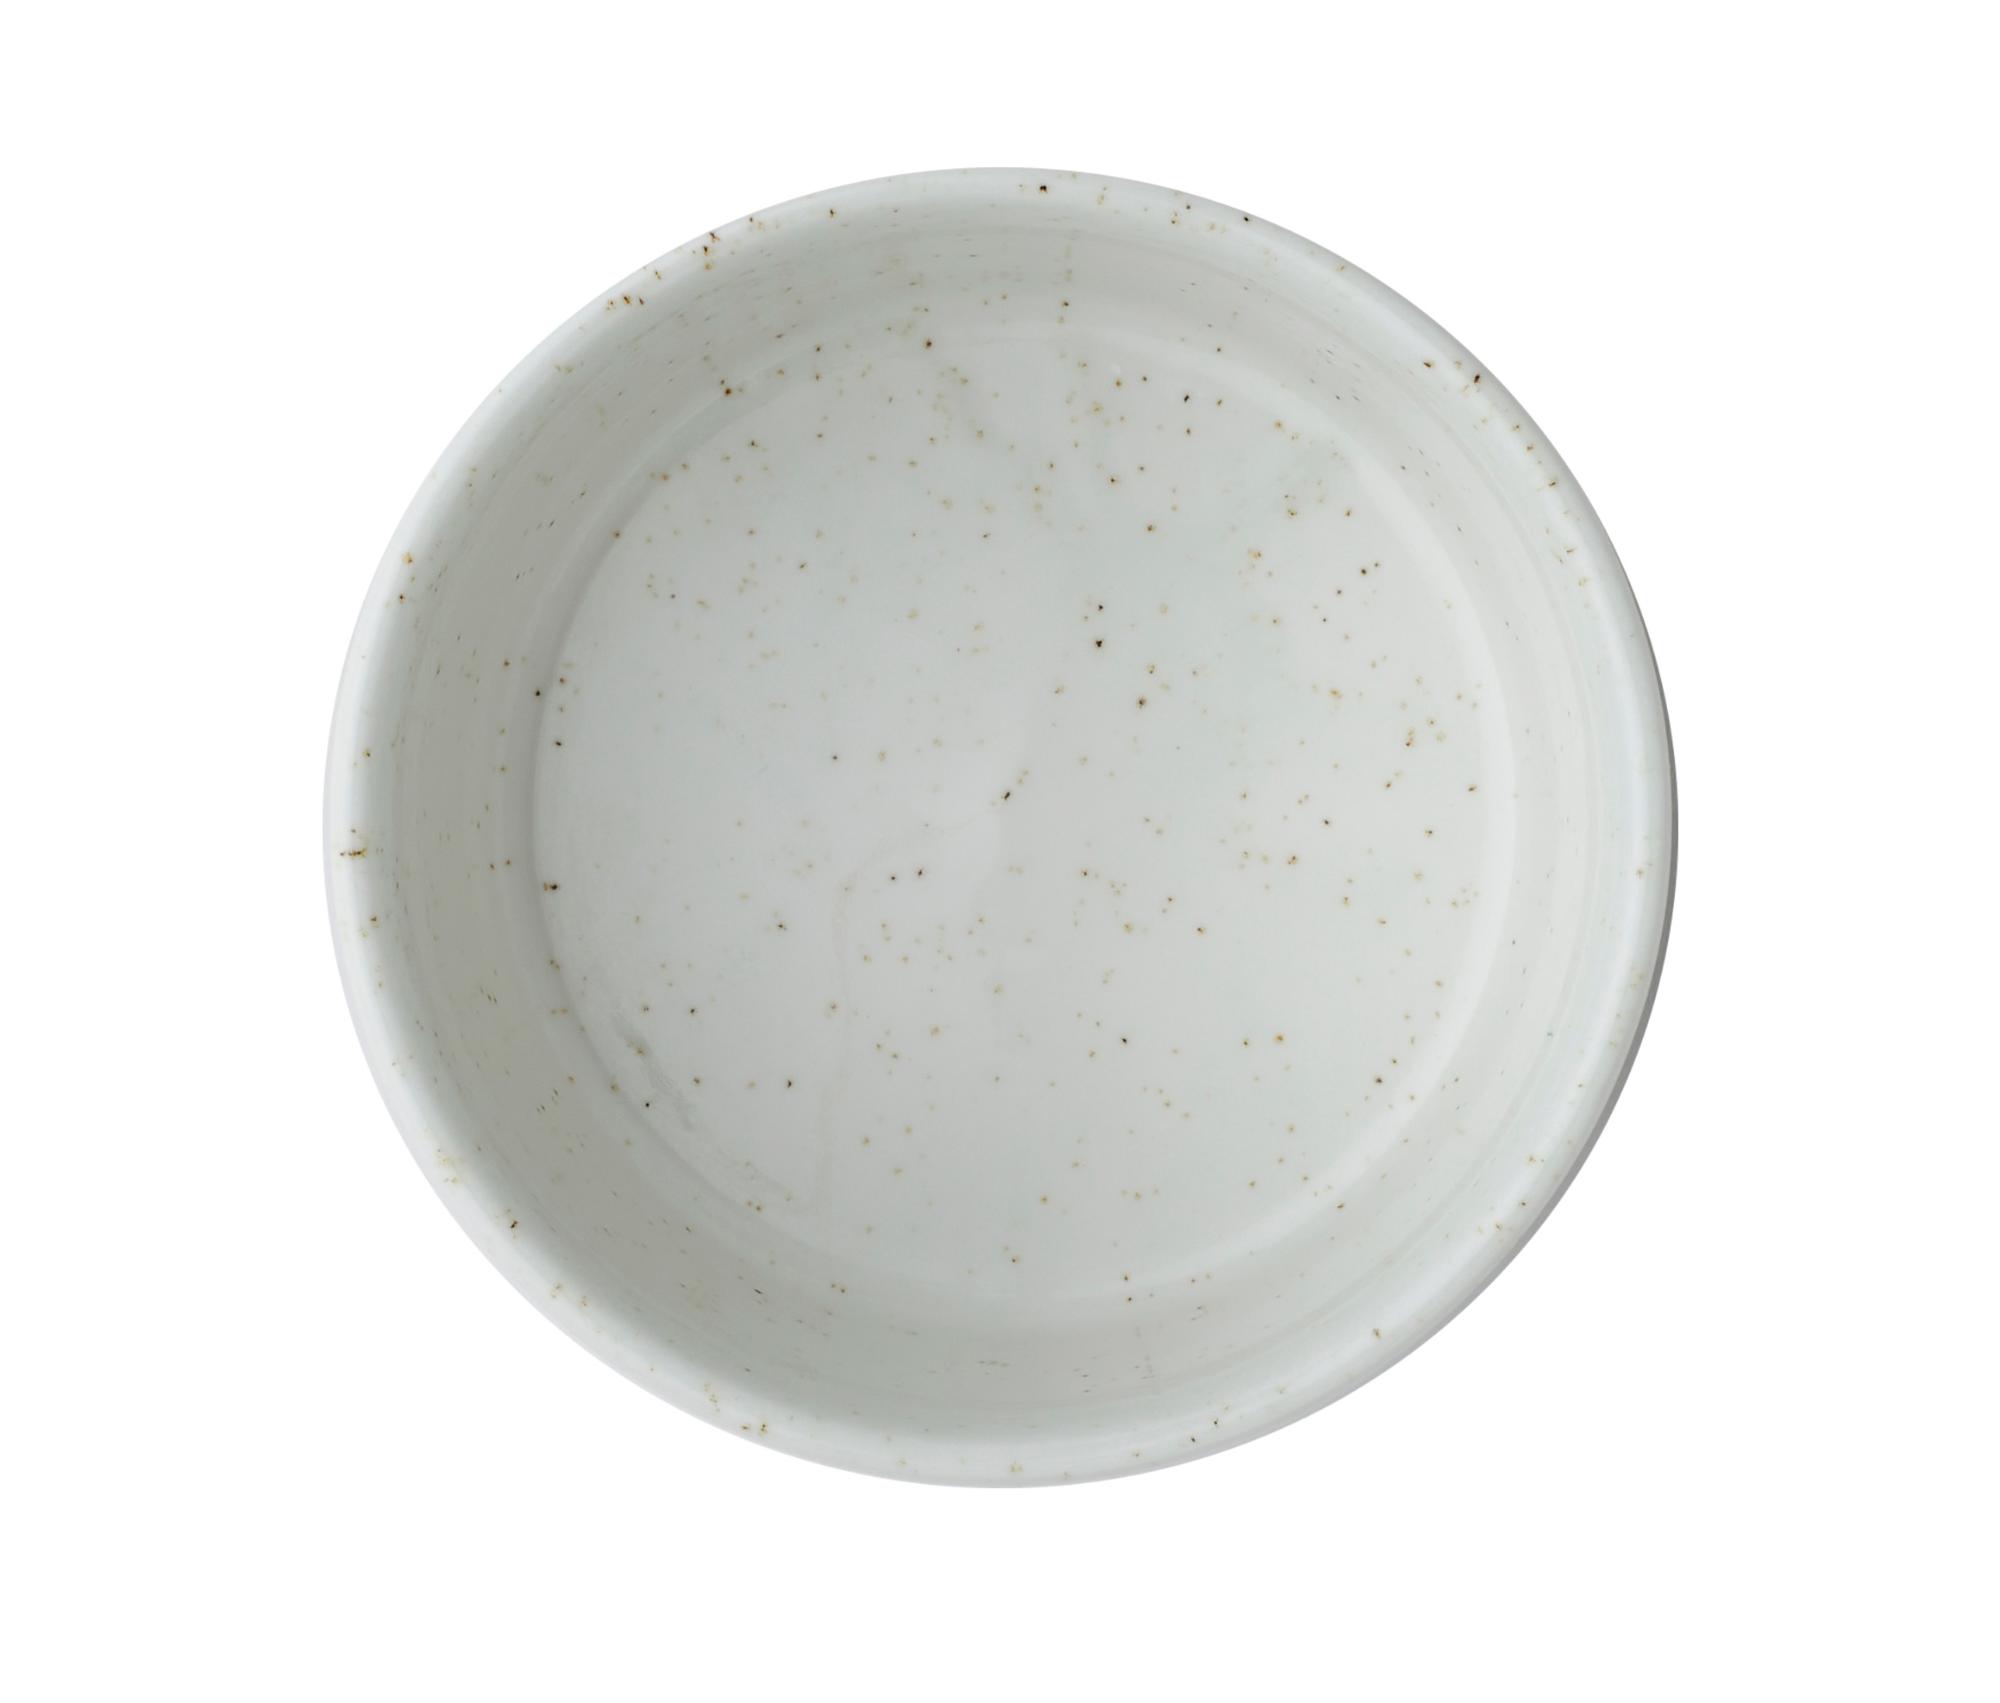 Nourish Siena Barley White soup bowl, 120mm